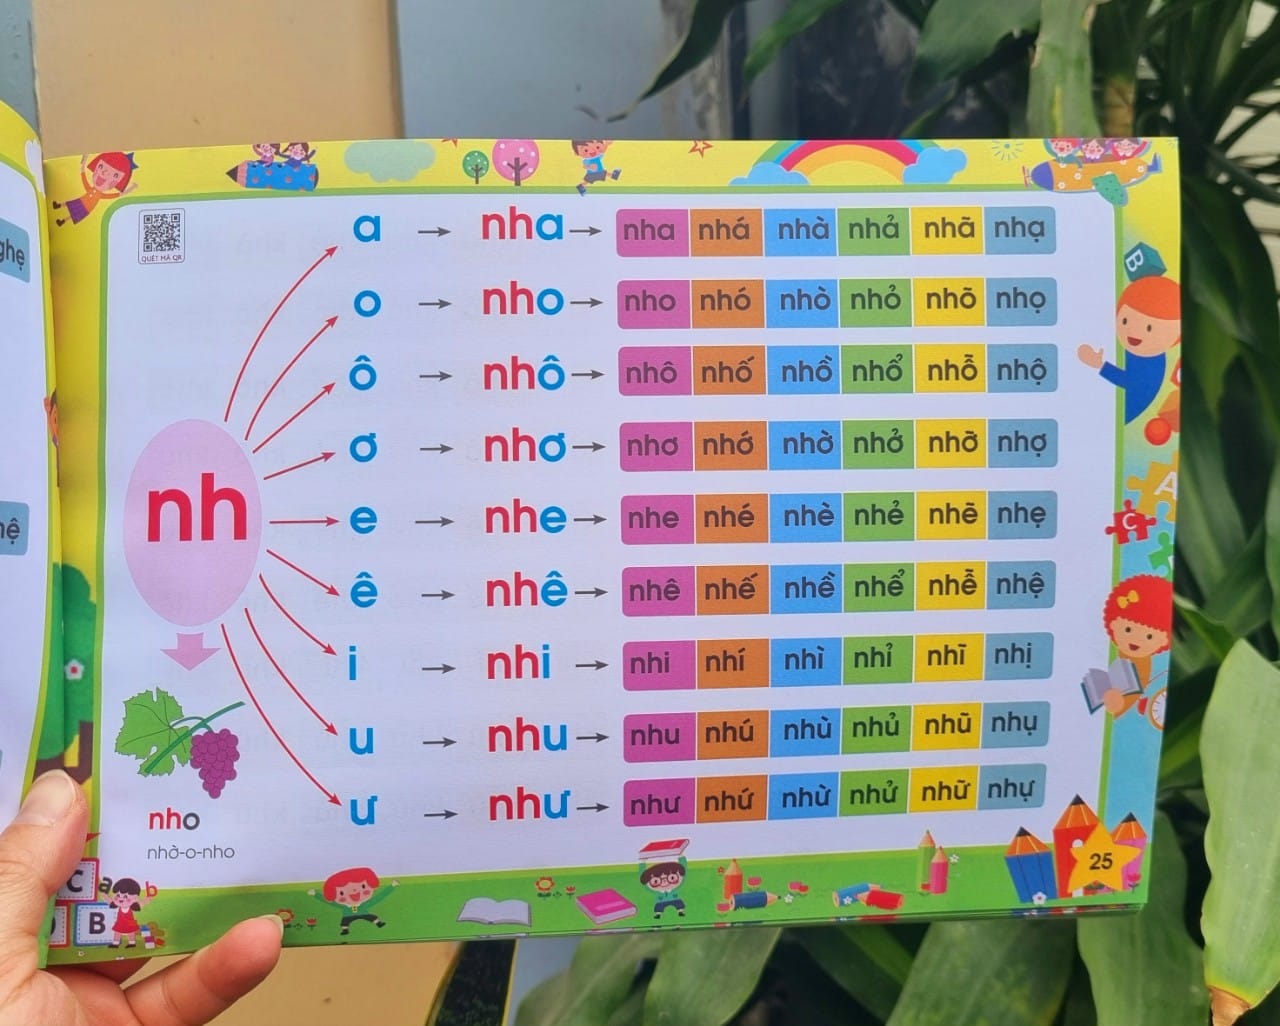 Sách Tập đánh vần Tiếng Việt 2022 dành cho bé 4-6 tuổi (phiên bản mới124 trang) quét mã QR - Tặng kèm bộ thẻ chữ cái và chữ ghép